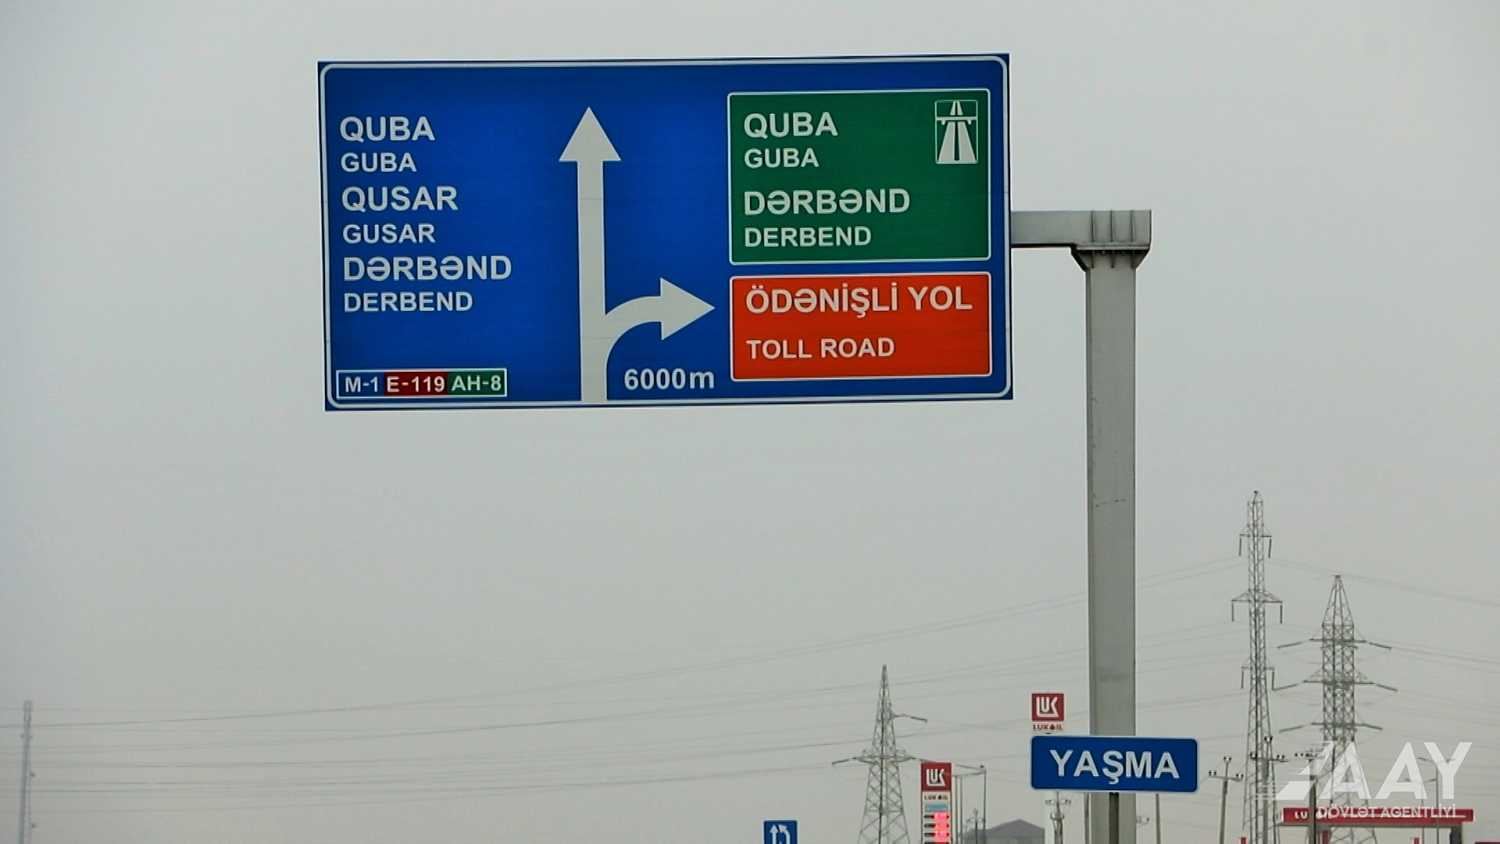 Bakı-Quba-Rusiya sərhədi avtomobil yolunun tikintisi davam etdirilir (FOTO/VİDEO)